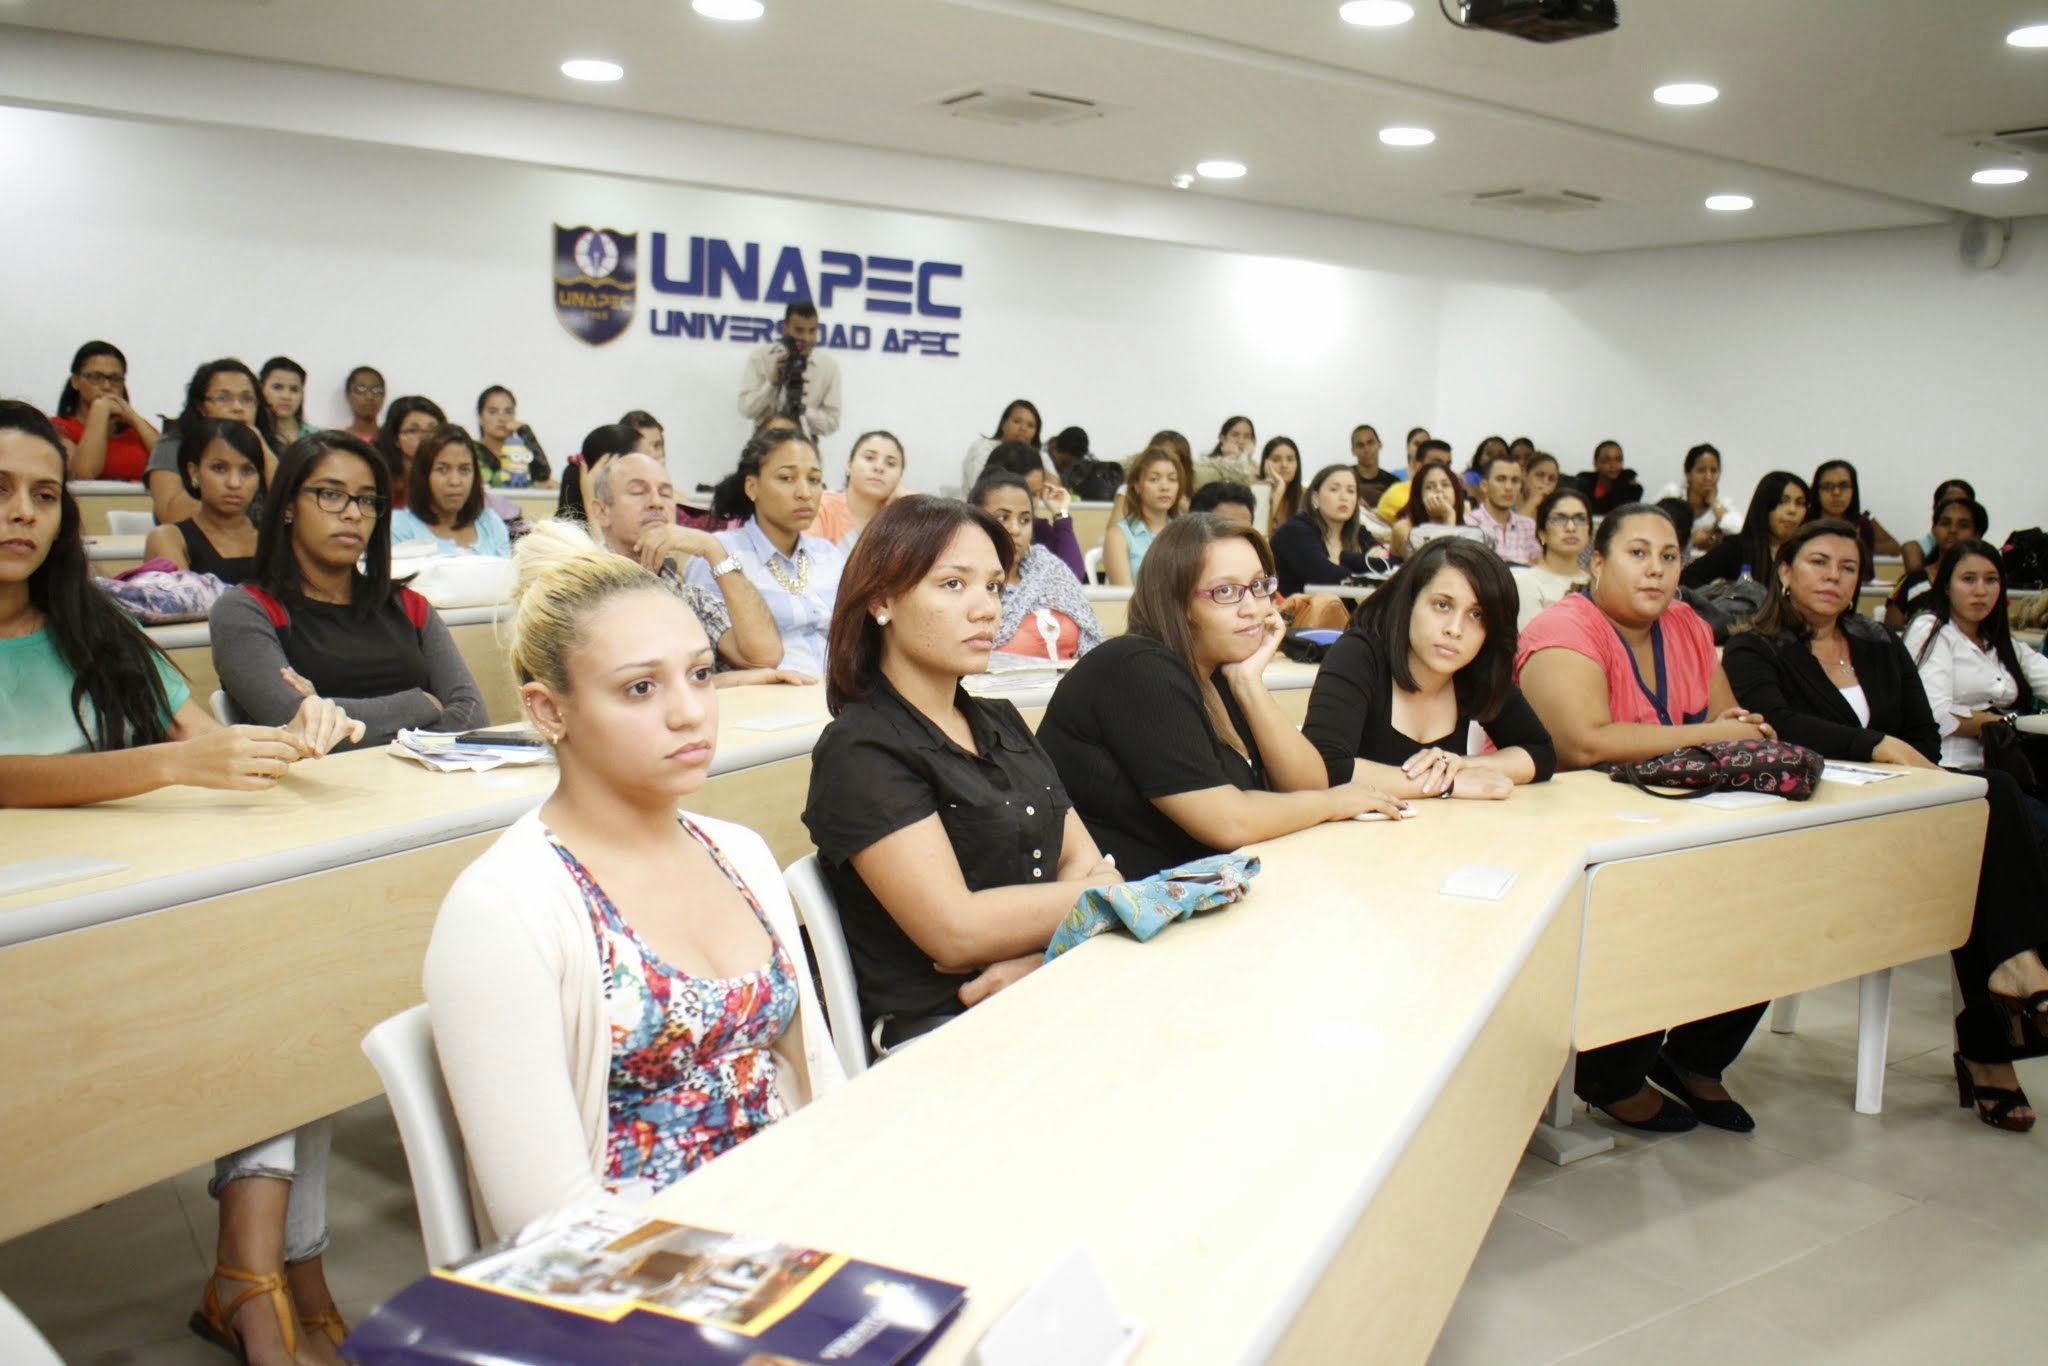 El salón de Conferencias de UNAPEC contó con una participación masiva, de estudiantes y profesores quienes pudieron tener a la mano diversas muestras de los productos